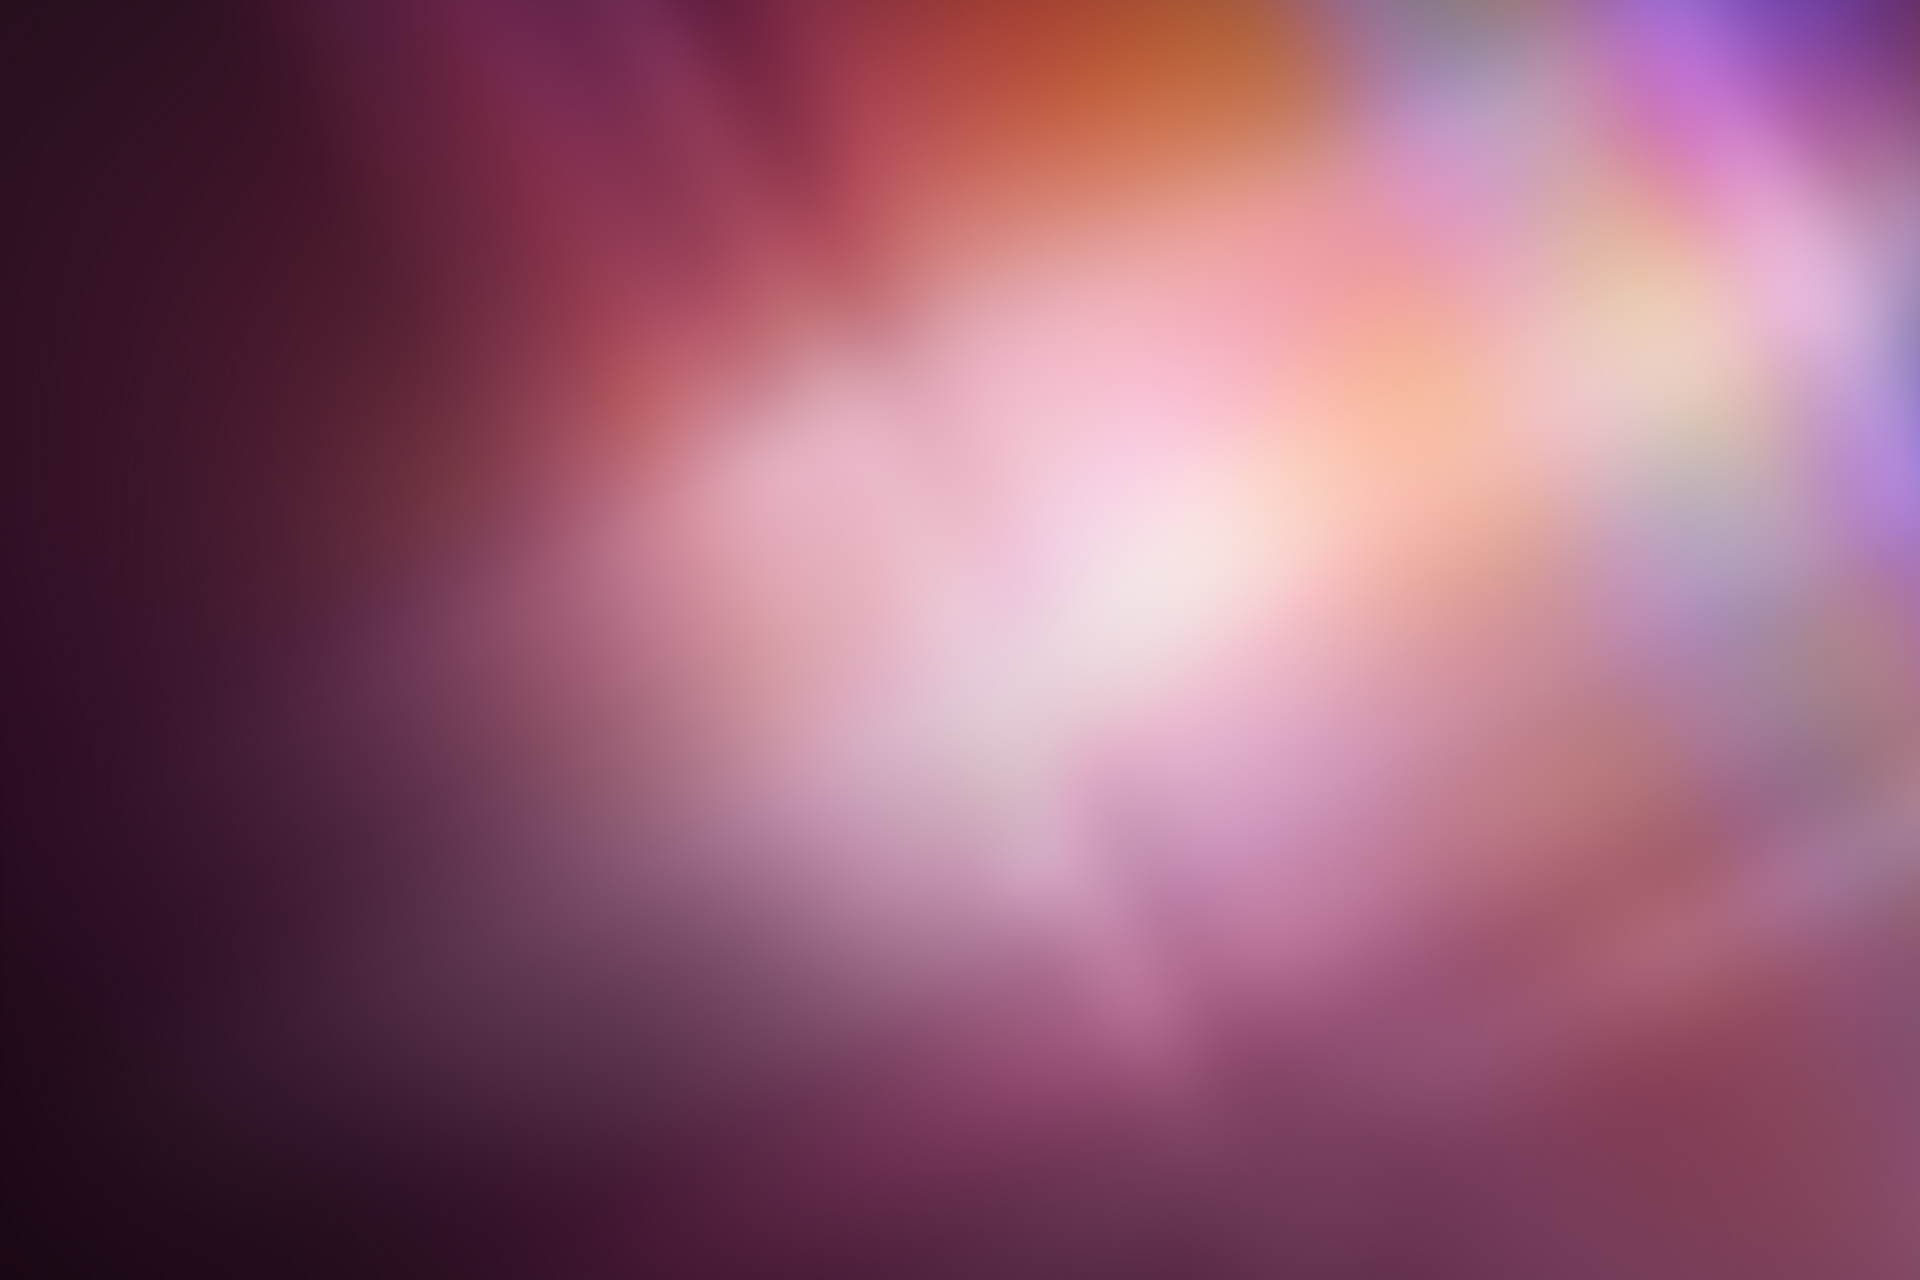 ubuntu wallpaper,violett,lila,rosa,himmel,licht